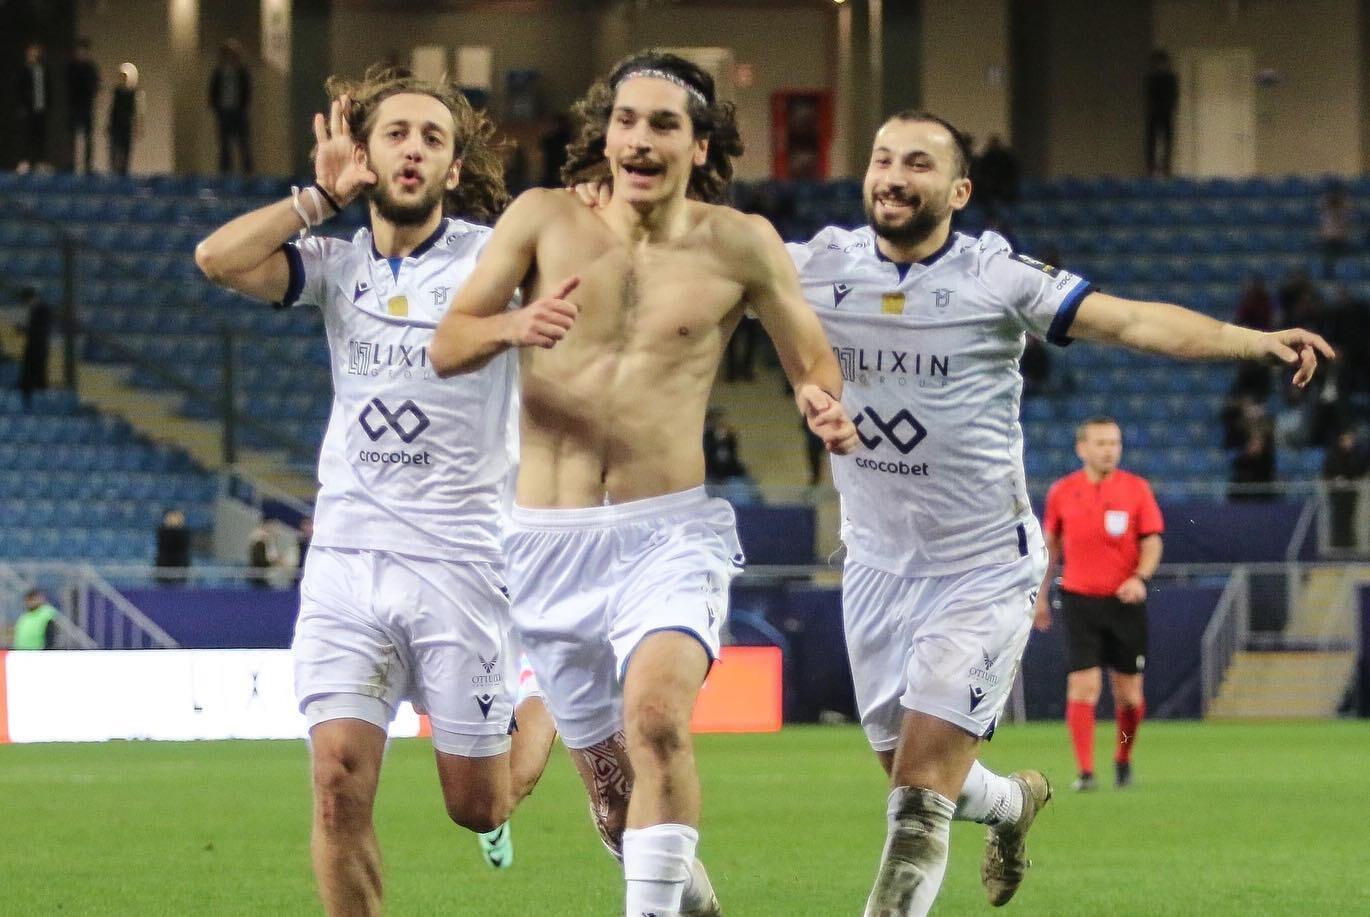 Gruziński piłkarz zdobył fantastycznego gola z własnej połowy boiska w meczu o mistrzostwo. Wideo